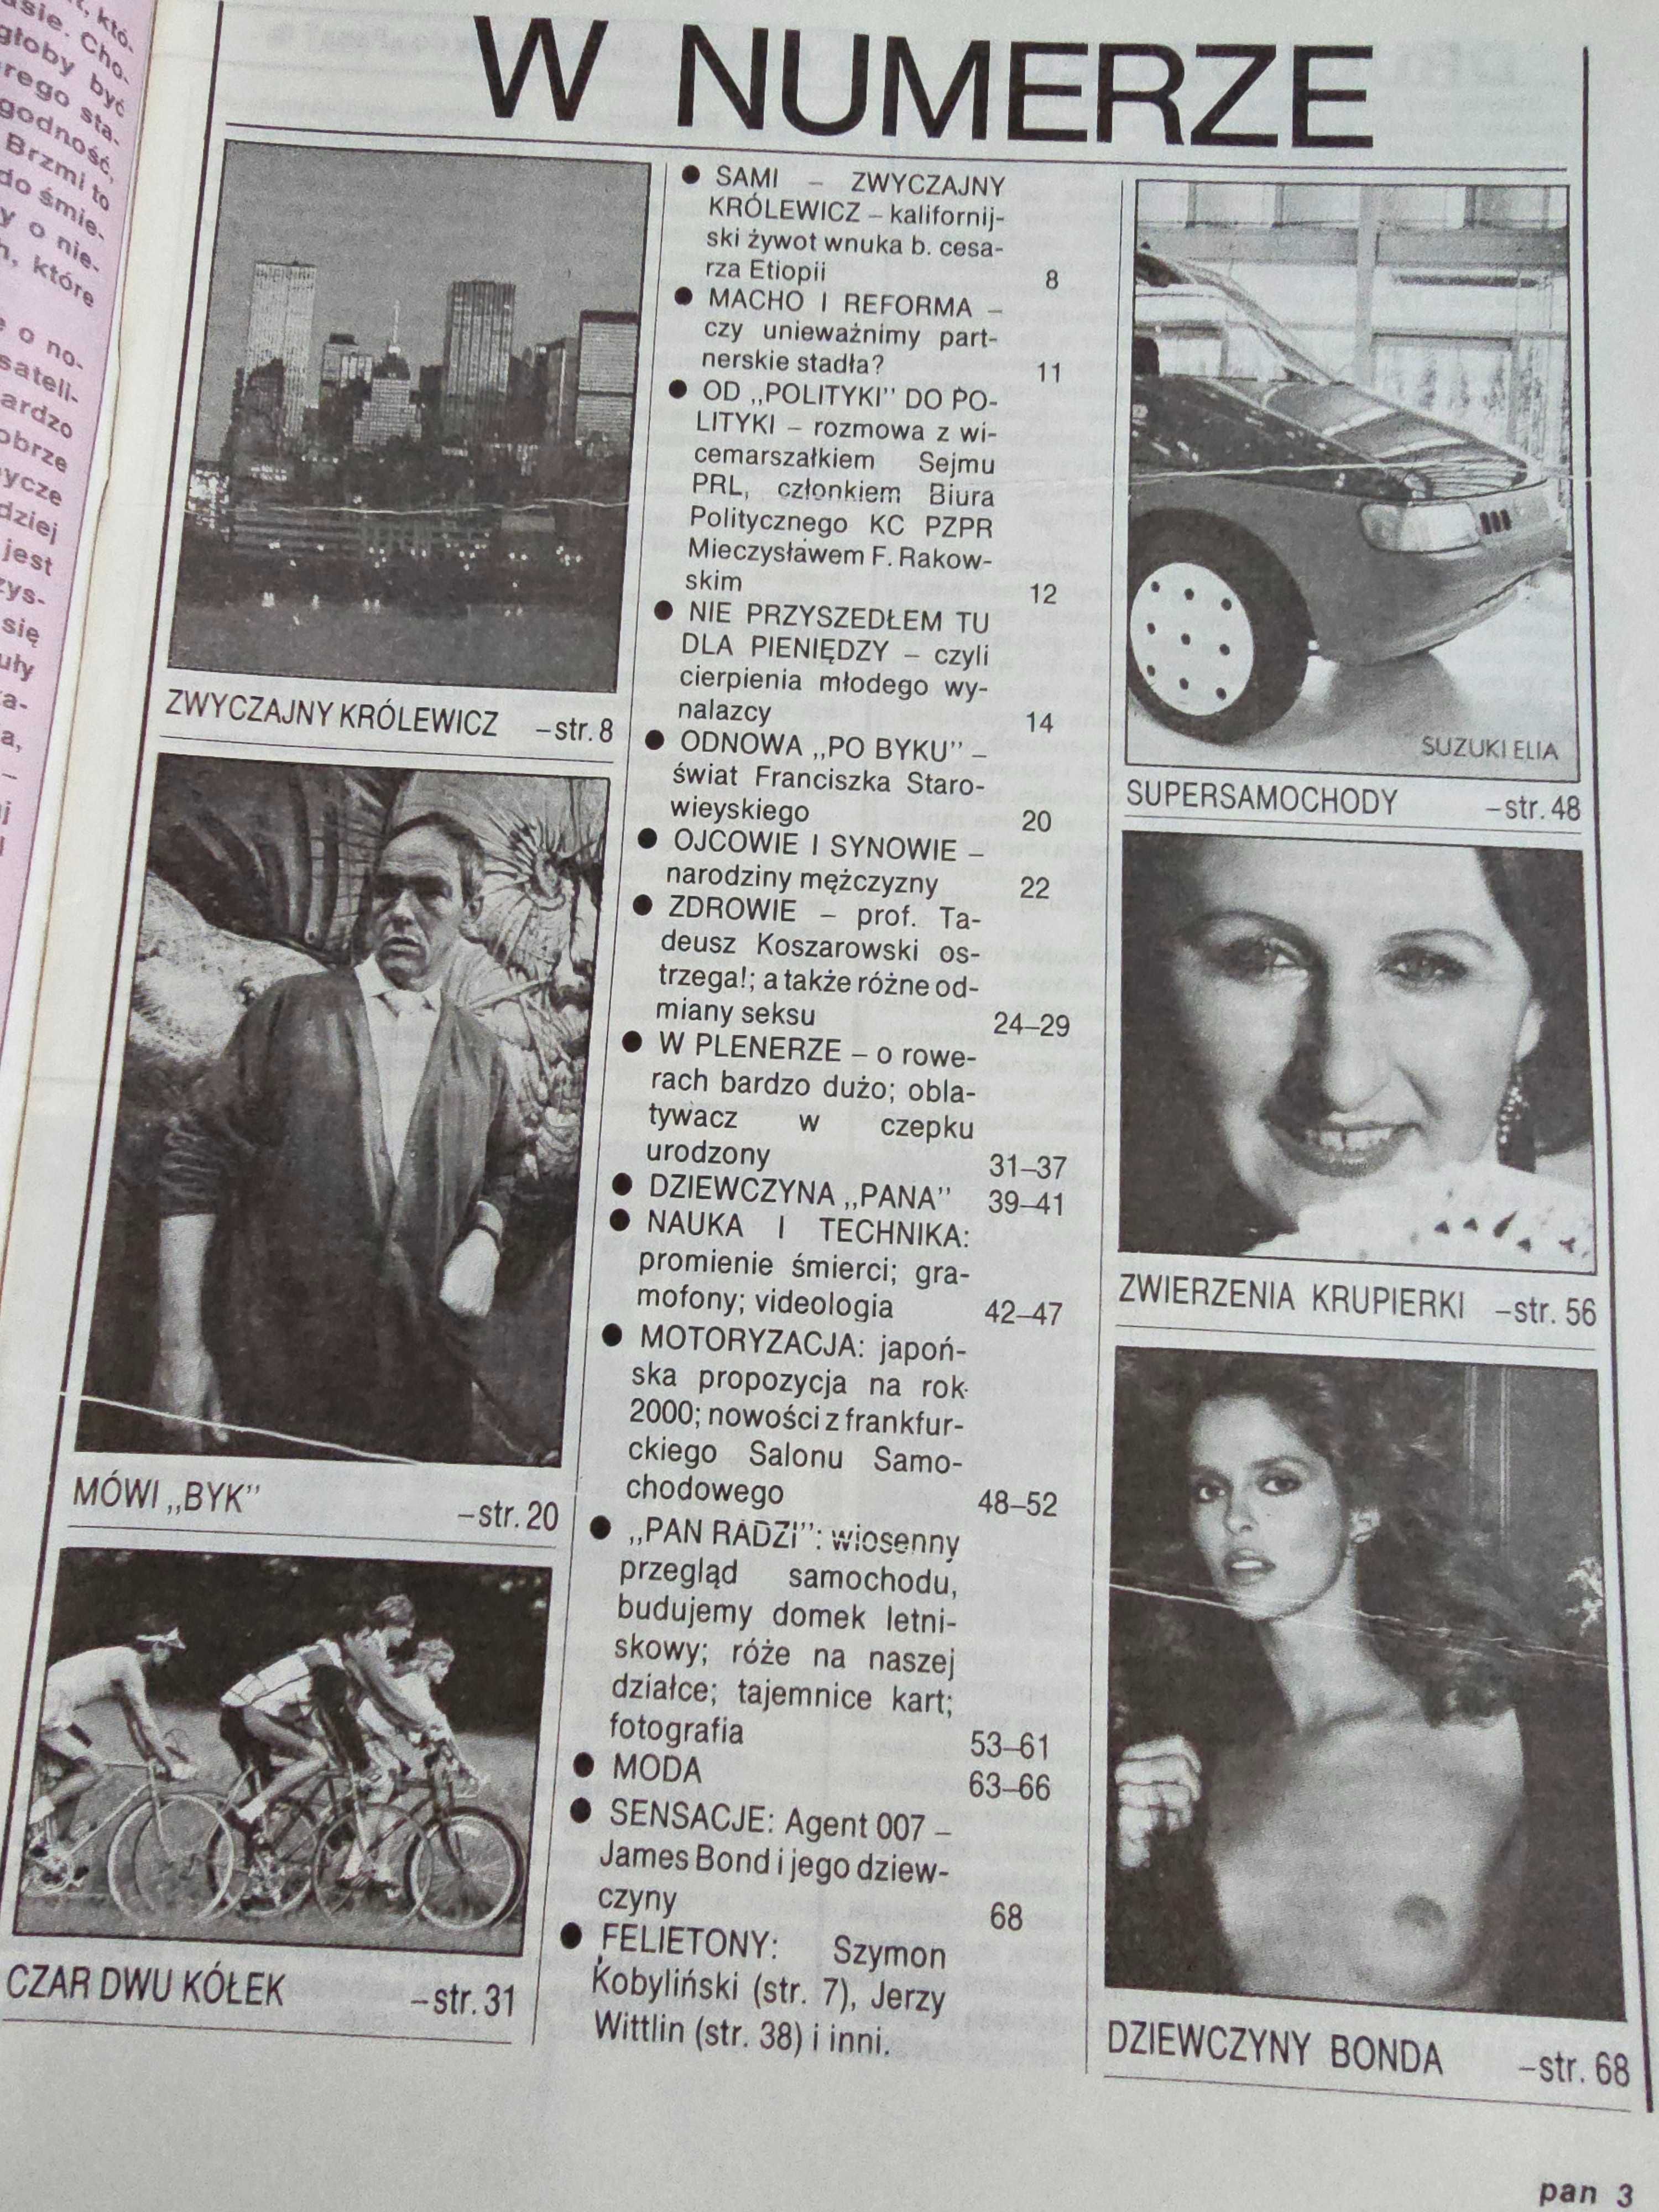 UNIKAT! Magazyn Poradniczo-Hobbistyczny PAN 4/1988 - polski Playboy